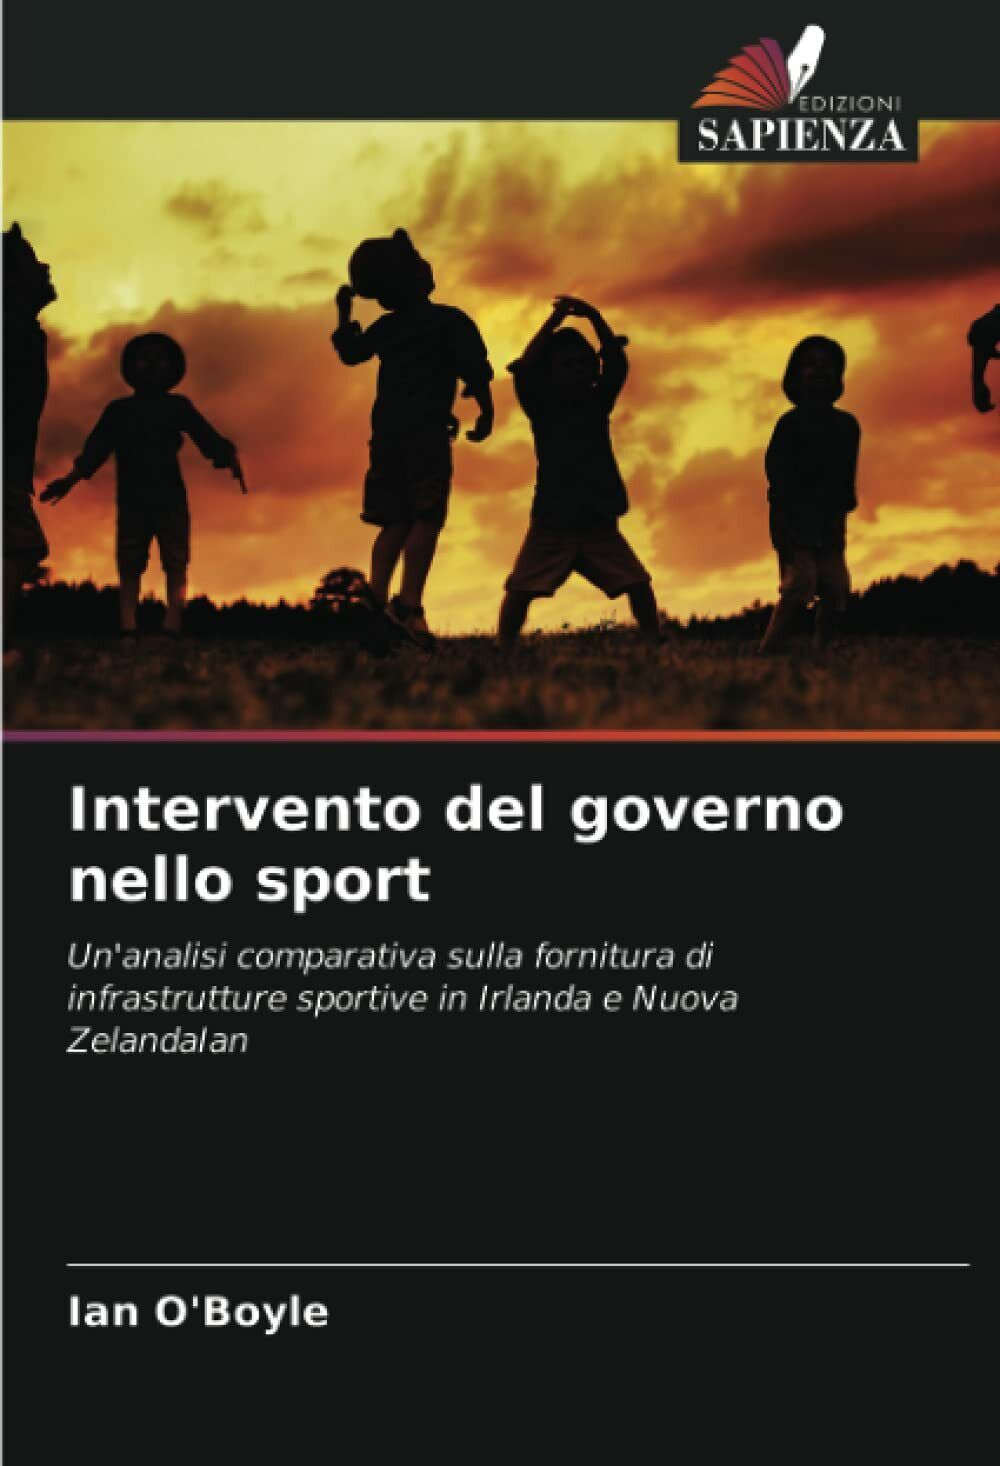 Intervento del governo nello sport - Ian O'Boyle - Edizioni Sapienza, 2021